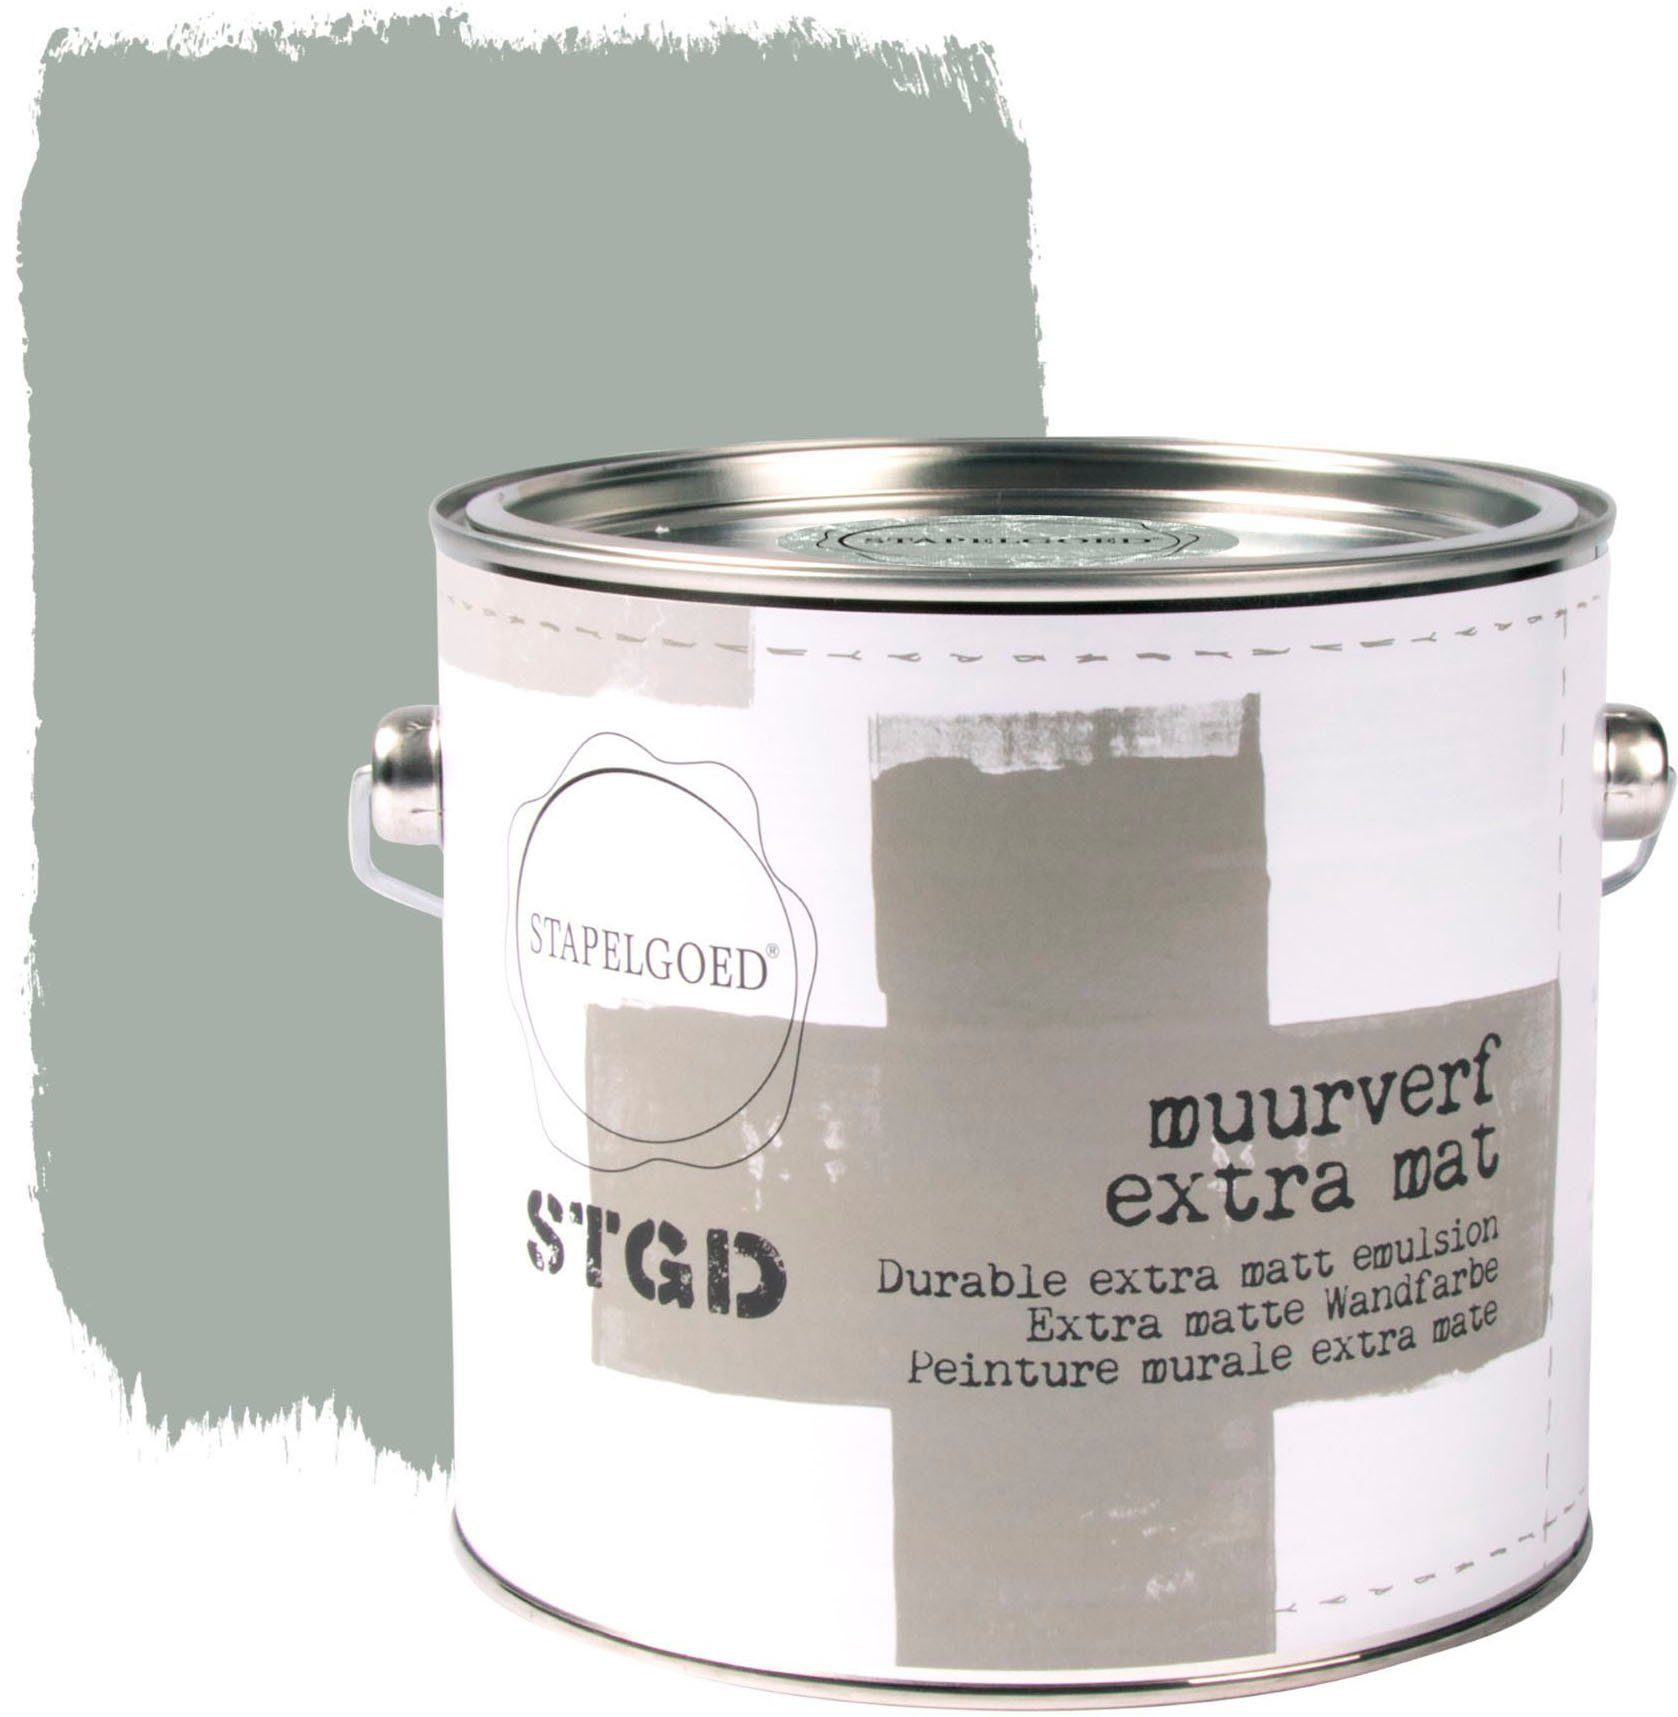 STAPELGOED Wandfarbe STGD muurverf grey shades, extra matt, hochdeckend und waschbeständig, 2,5 Liter Mouse Grau